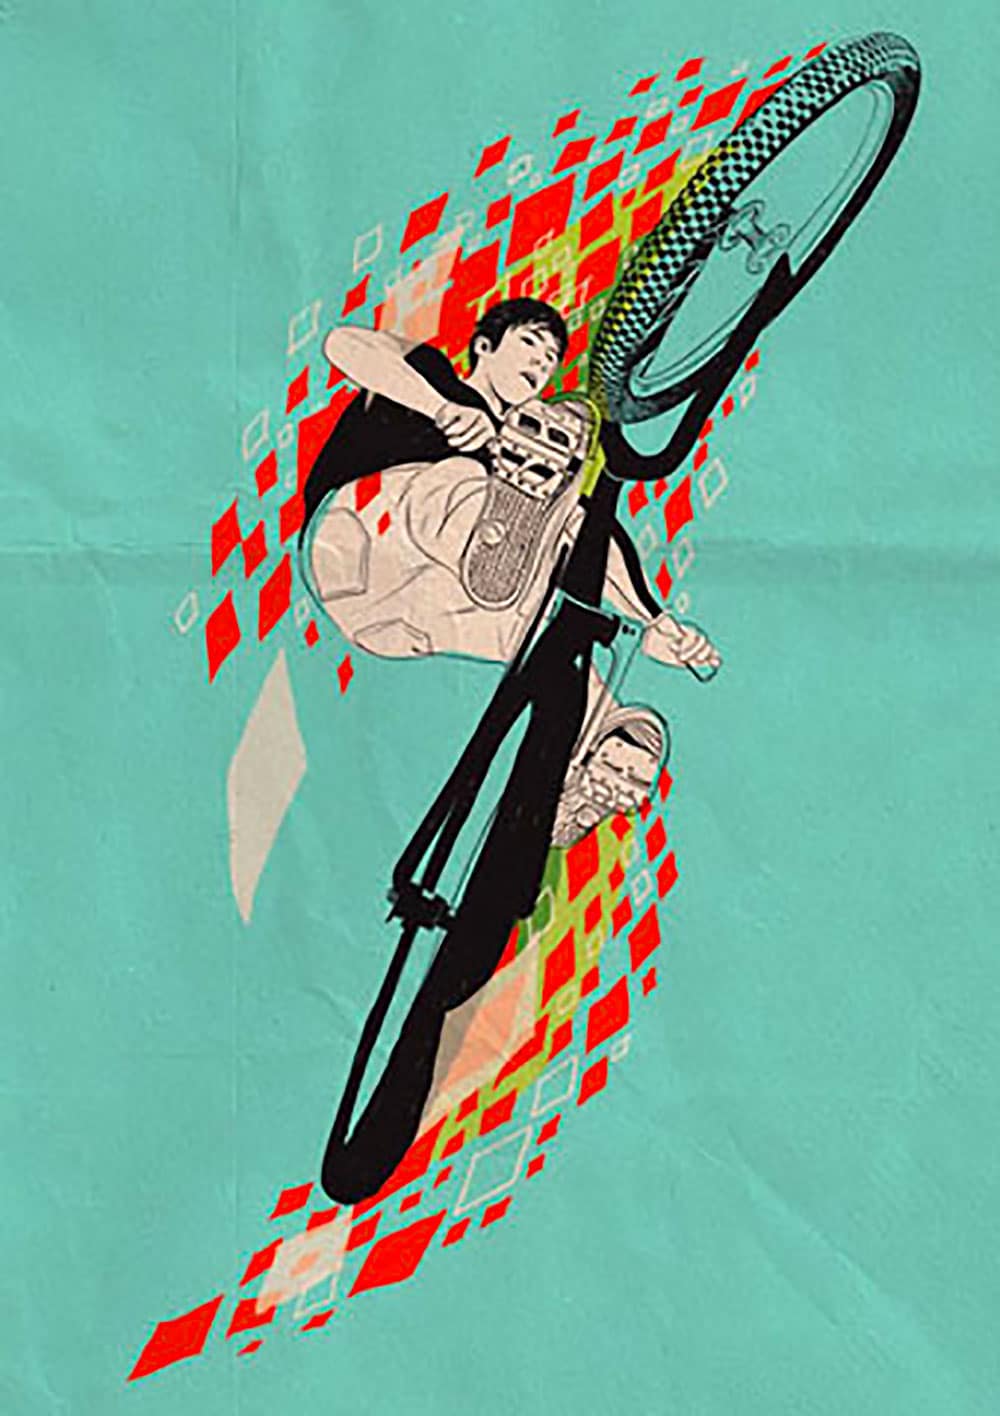 Illustration de Raid71, un illustrateur de vélos talentueux